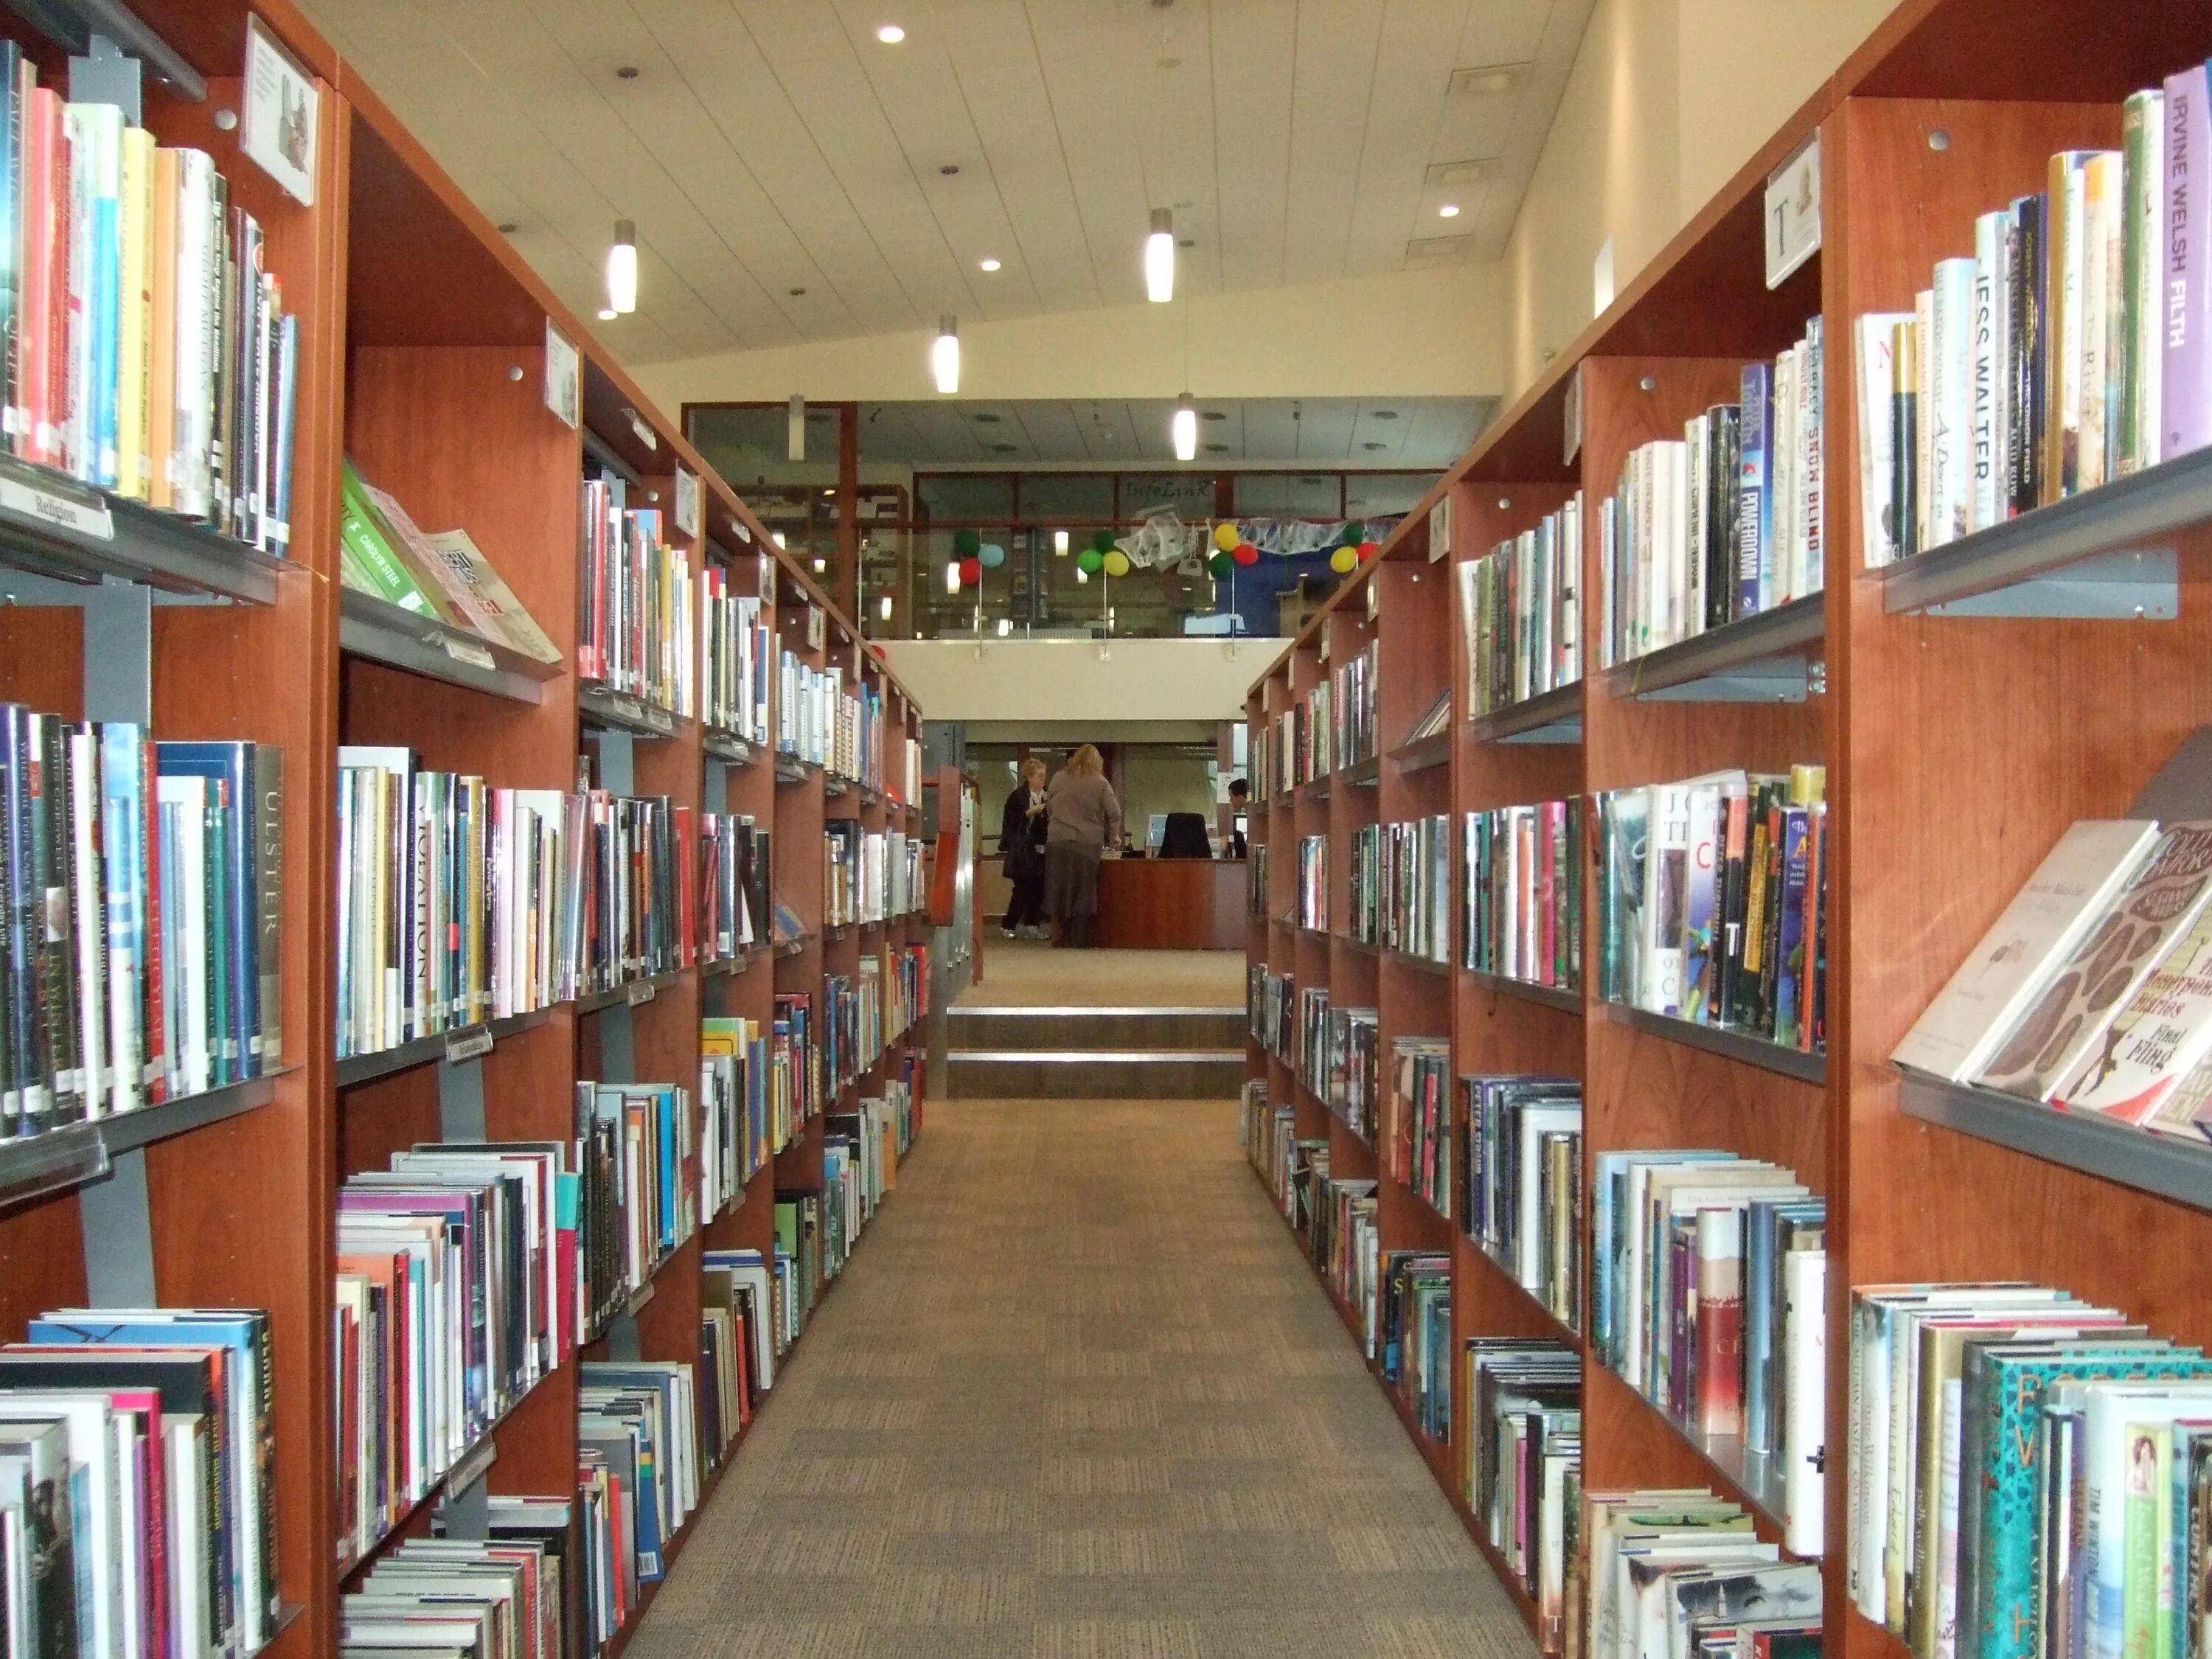 My book library. Школьная библиотека книгохранилище библиотеки. Стеллажи для книг в библиотеку. Полки для книг. Полки с книгами в библиотеке.